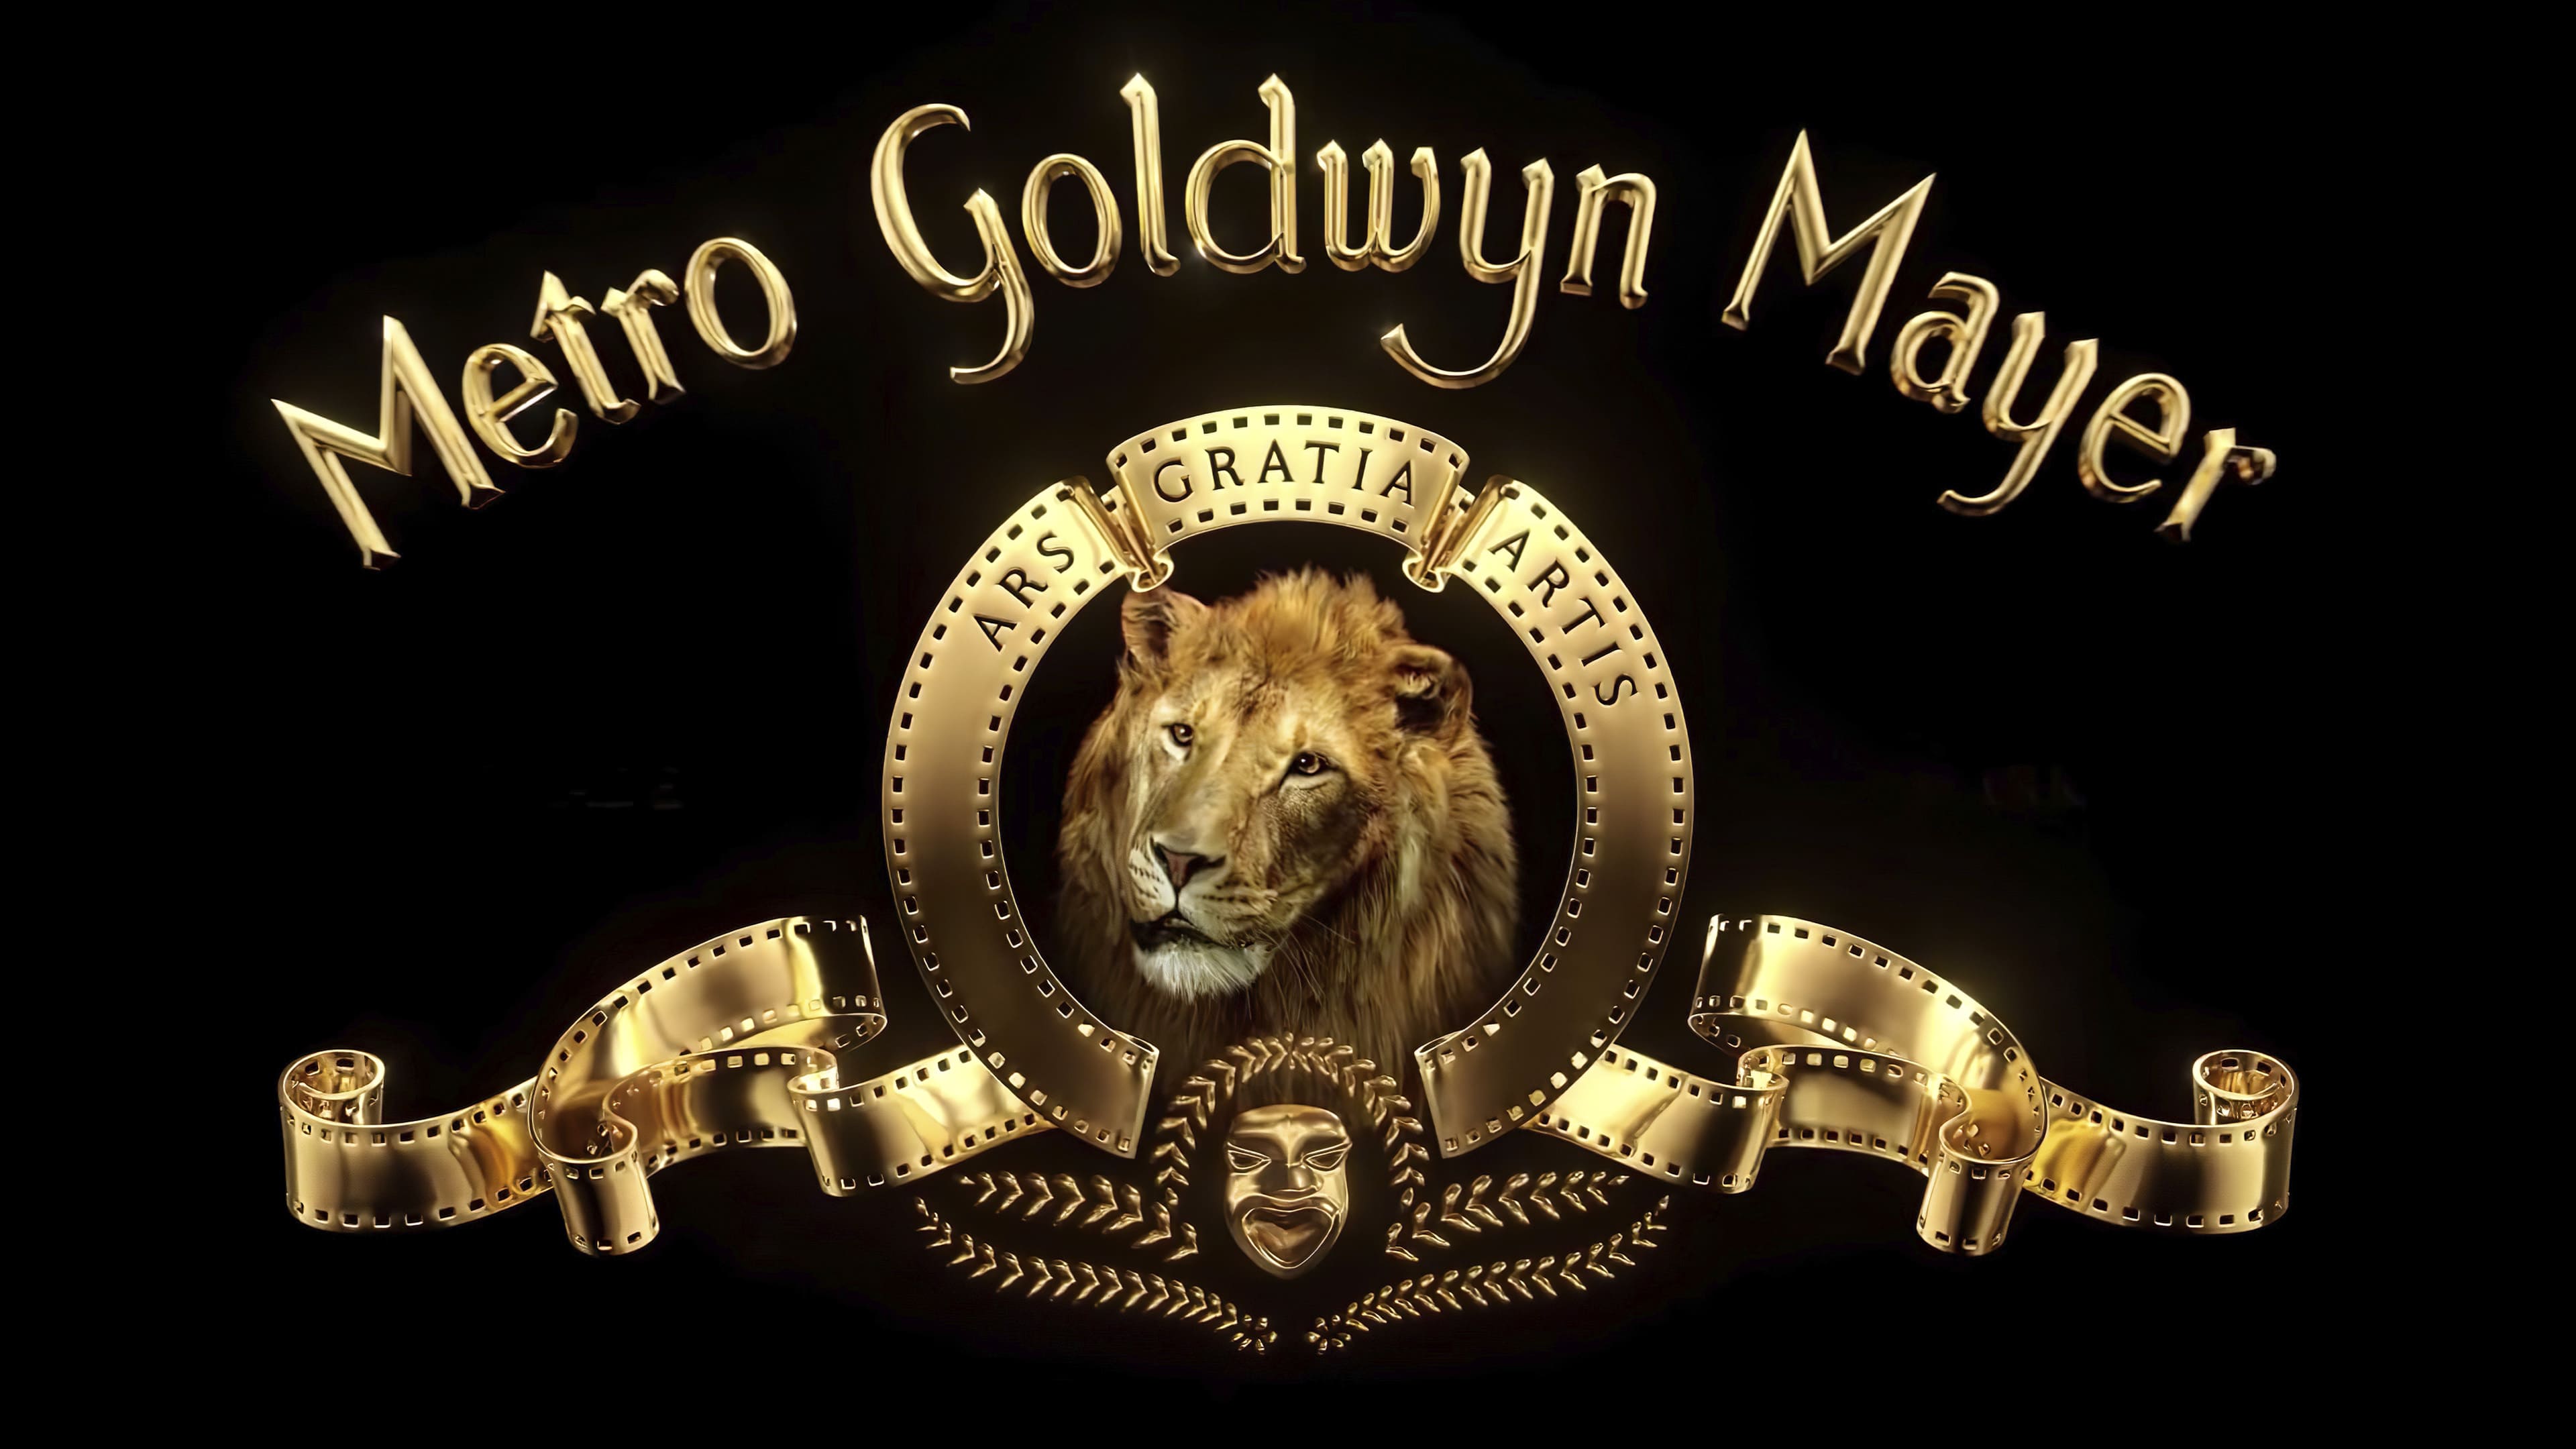 MetroGoldwynMayer refreshes the iconic lion logo